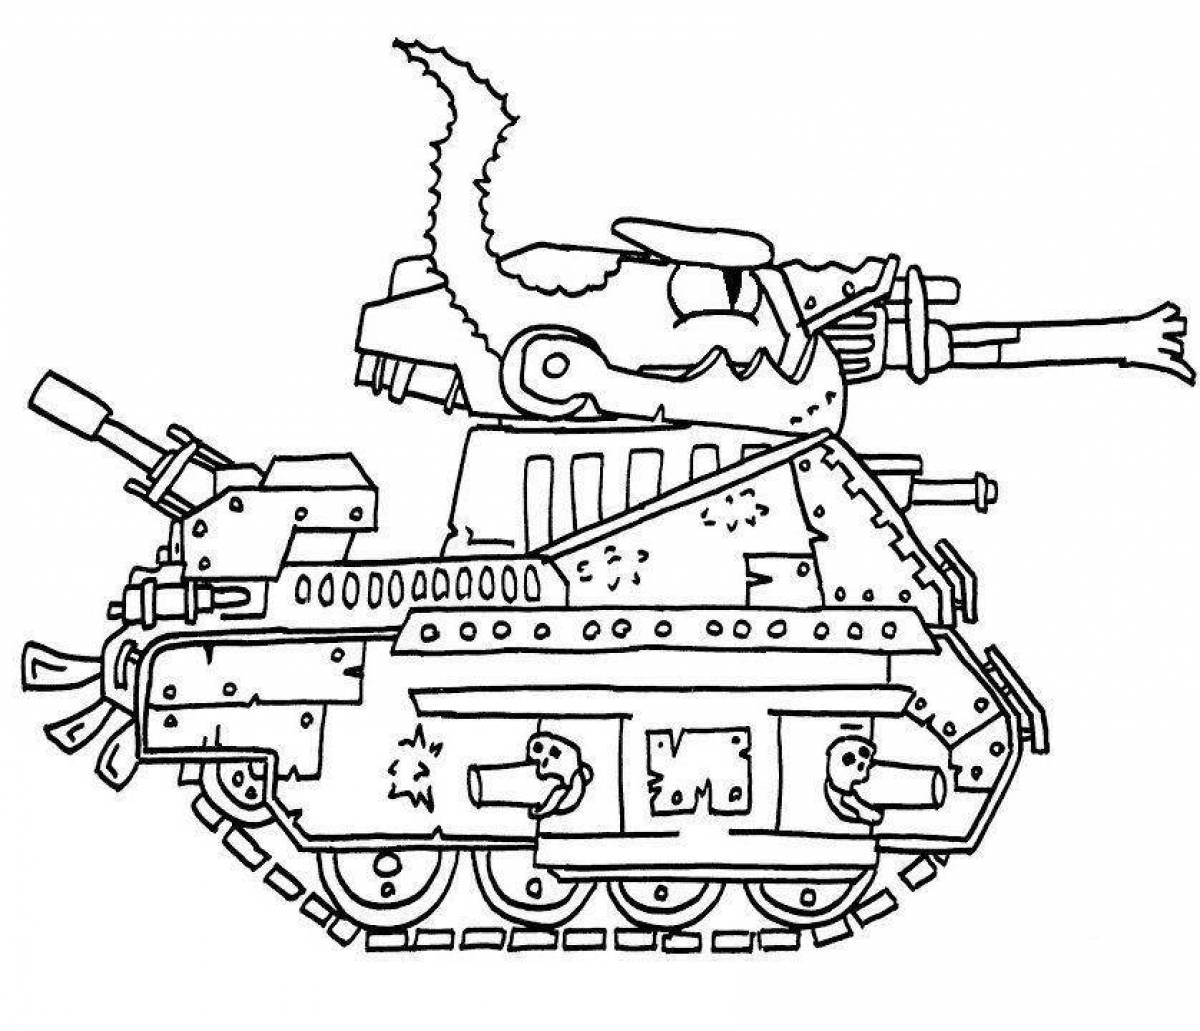 Grand living tanks coloring book